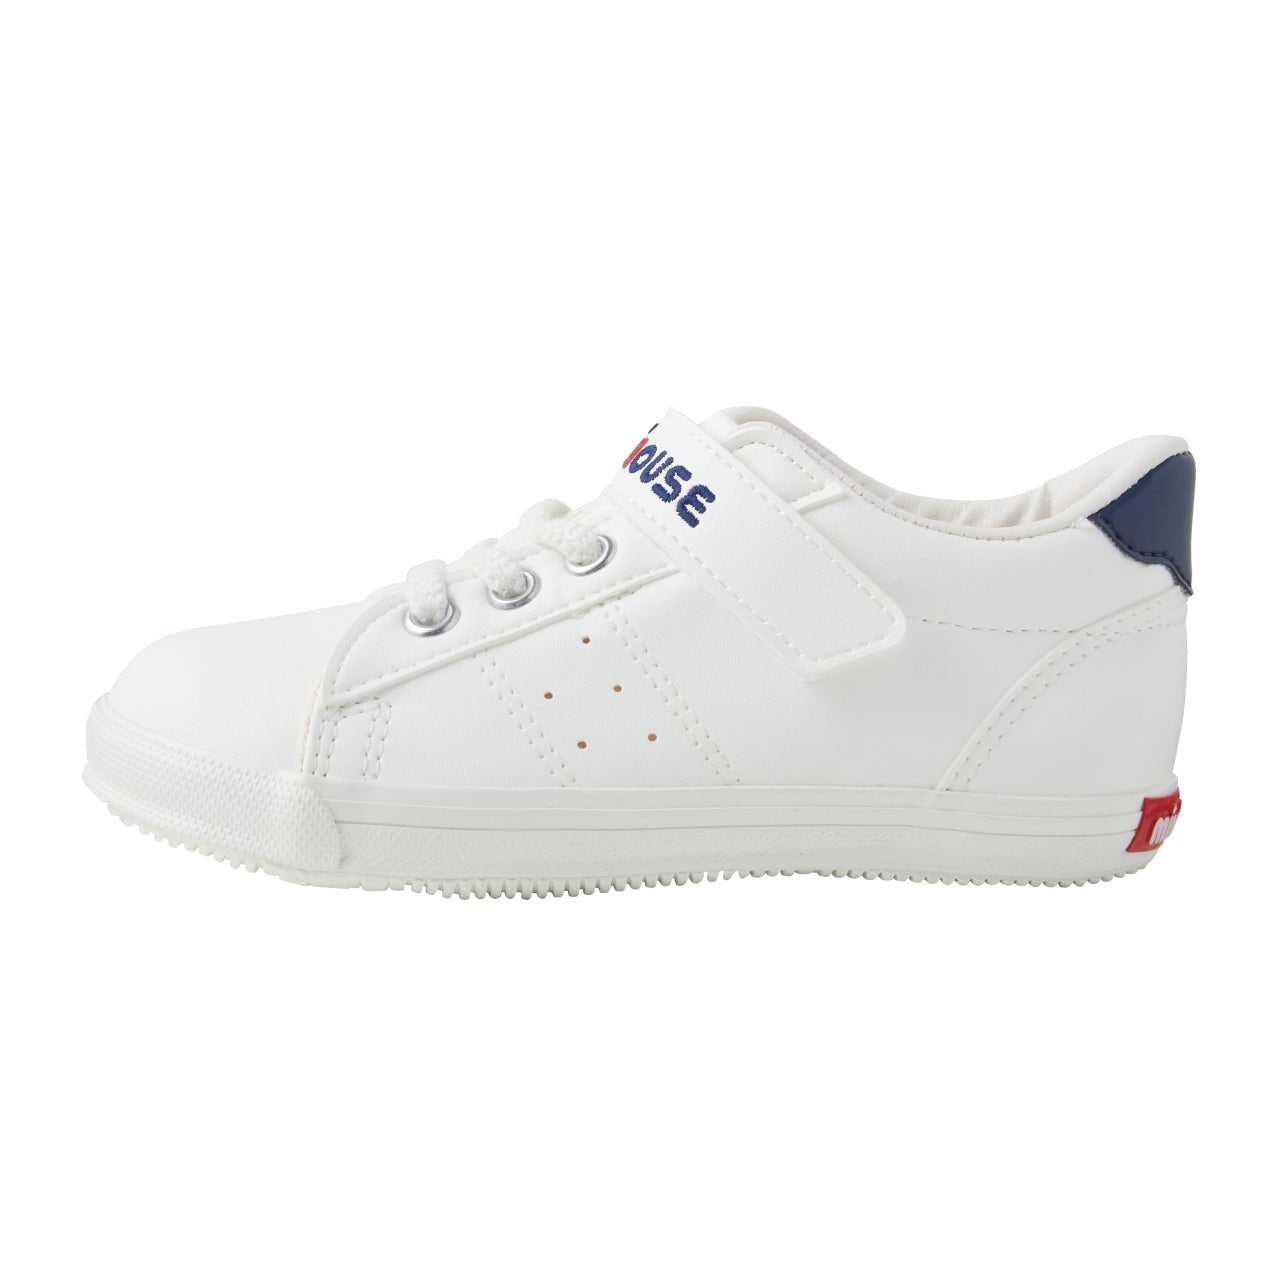 Fresh White Sneakers for Kids - MIKI HOUSE USA